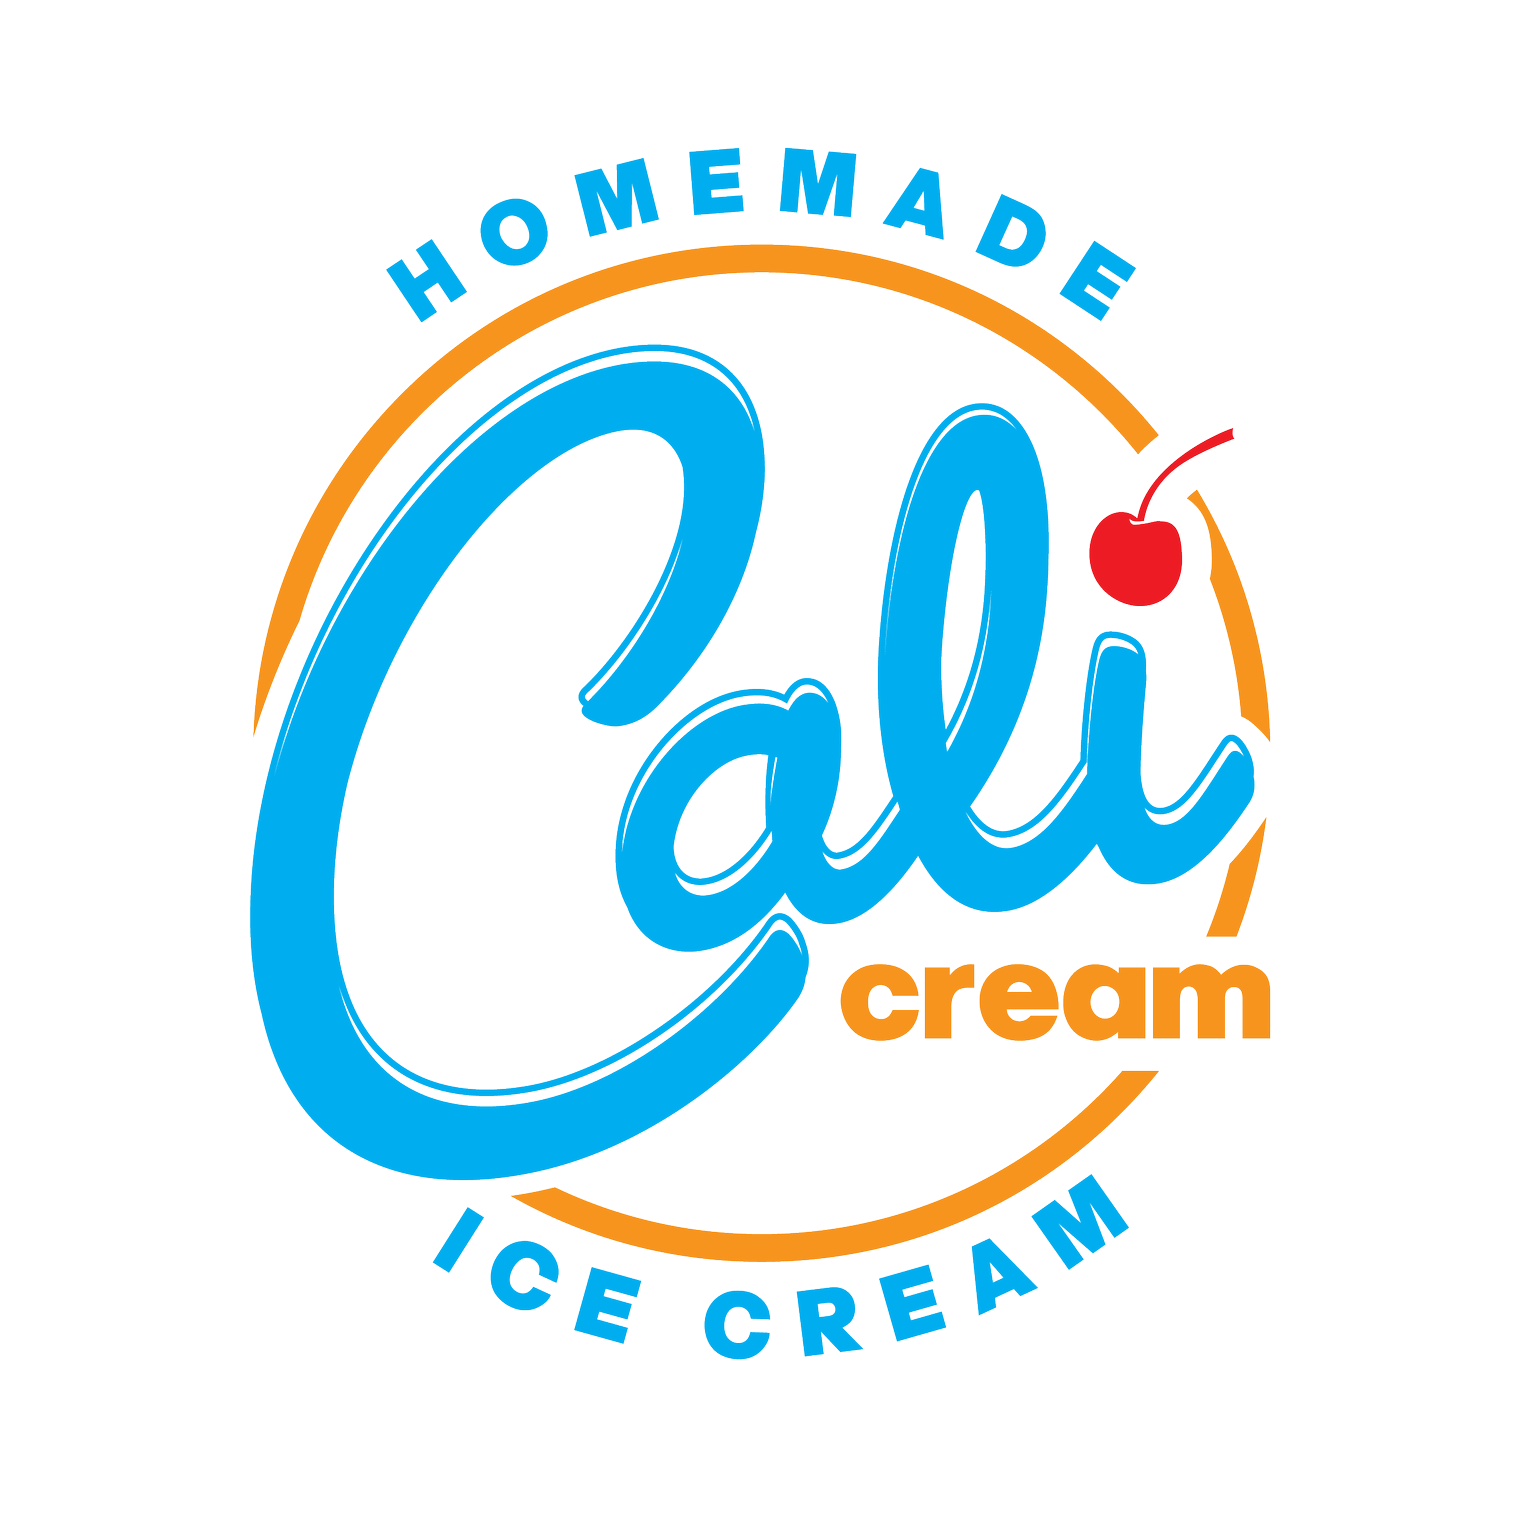 Cali Cream